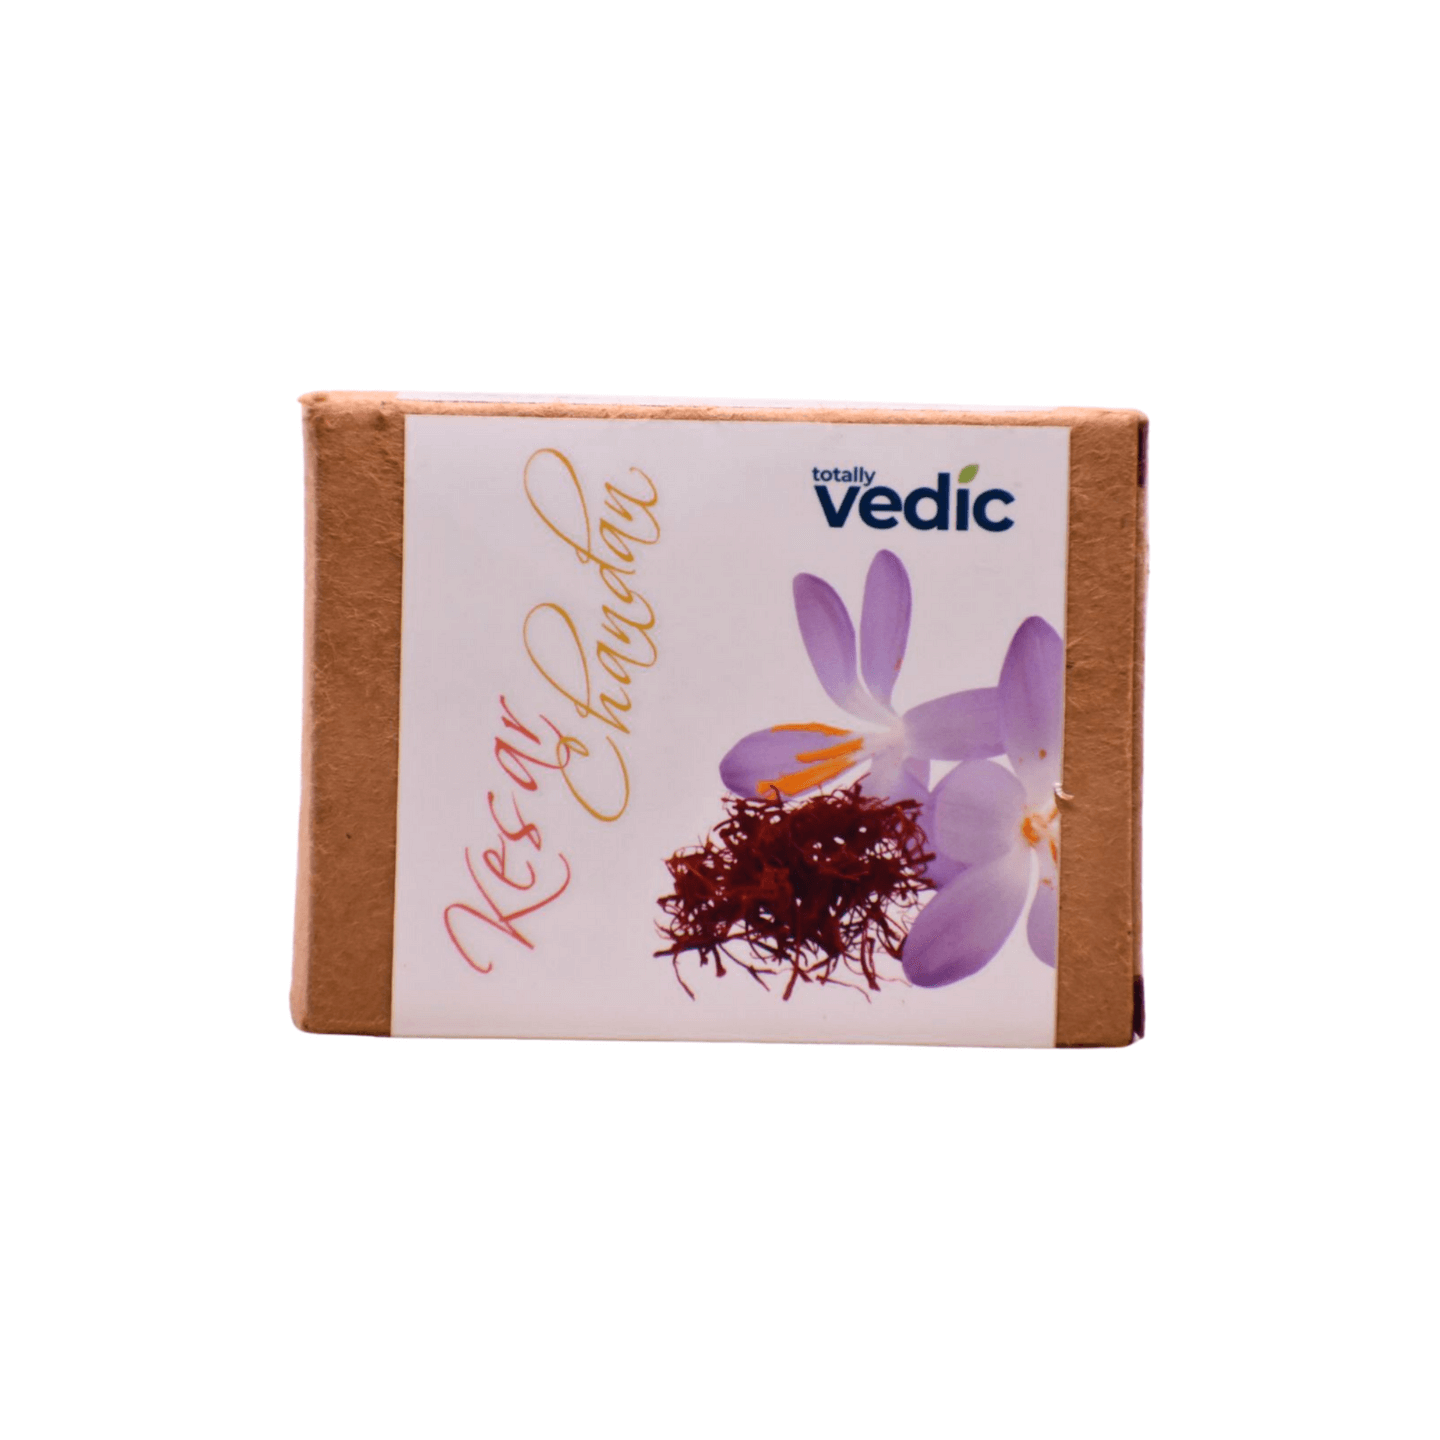 Totally Vedic | 100% Natural Chemical Free Handmade Soap | Kesar & Chandan - Pure, Serene, Beautiful You - Totally Indian